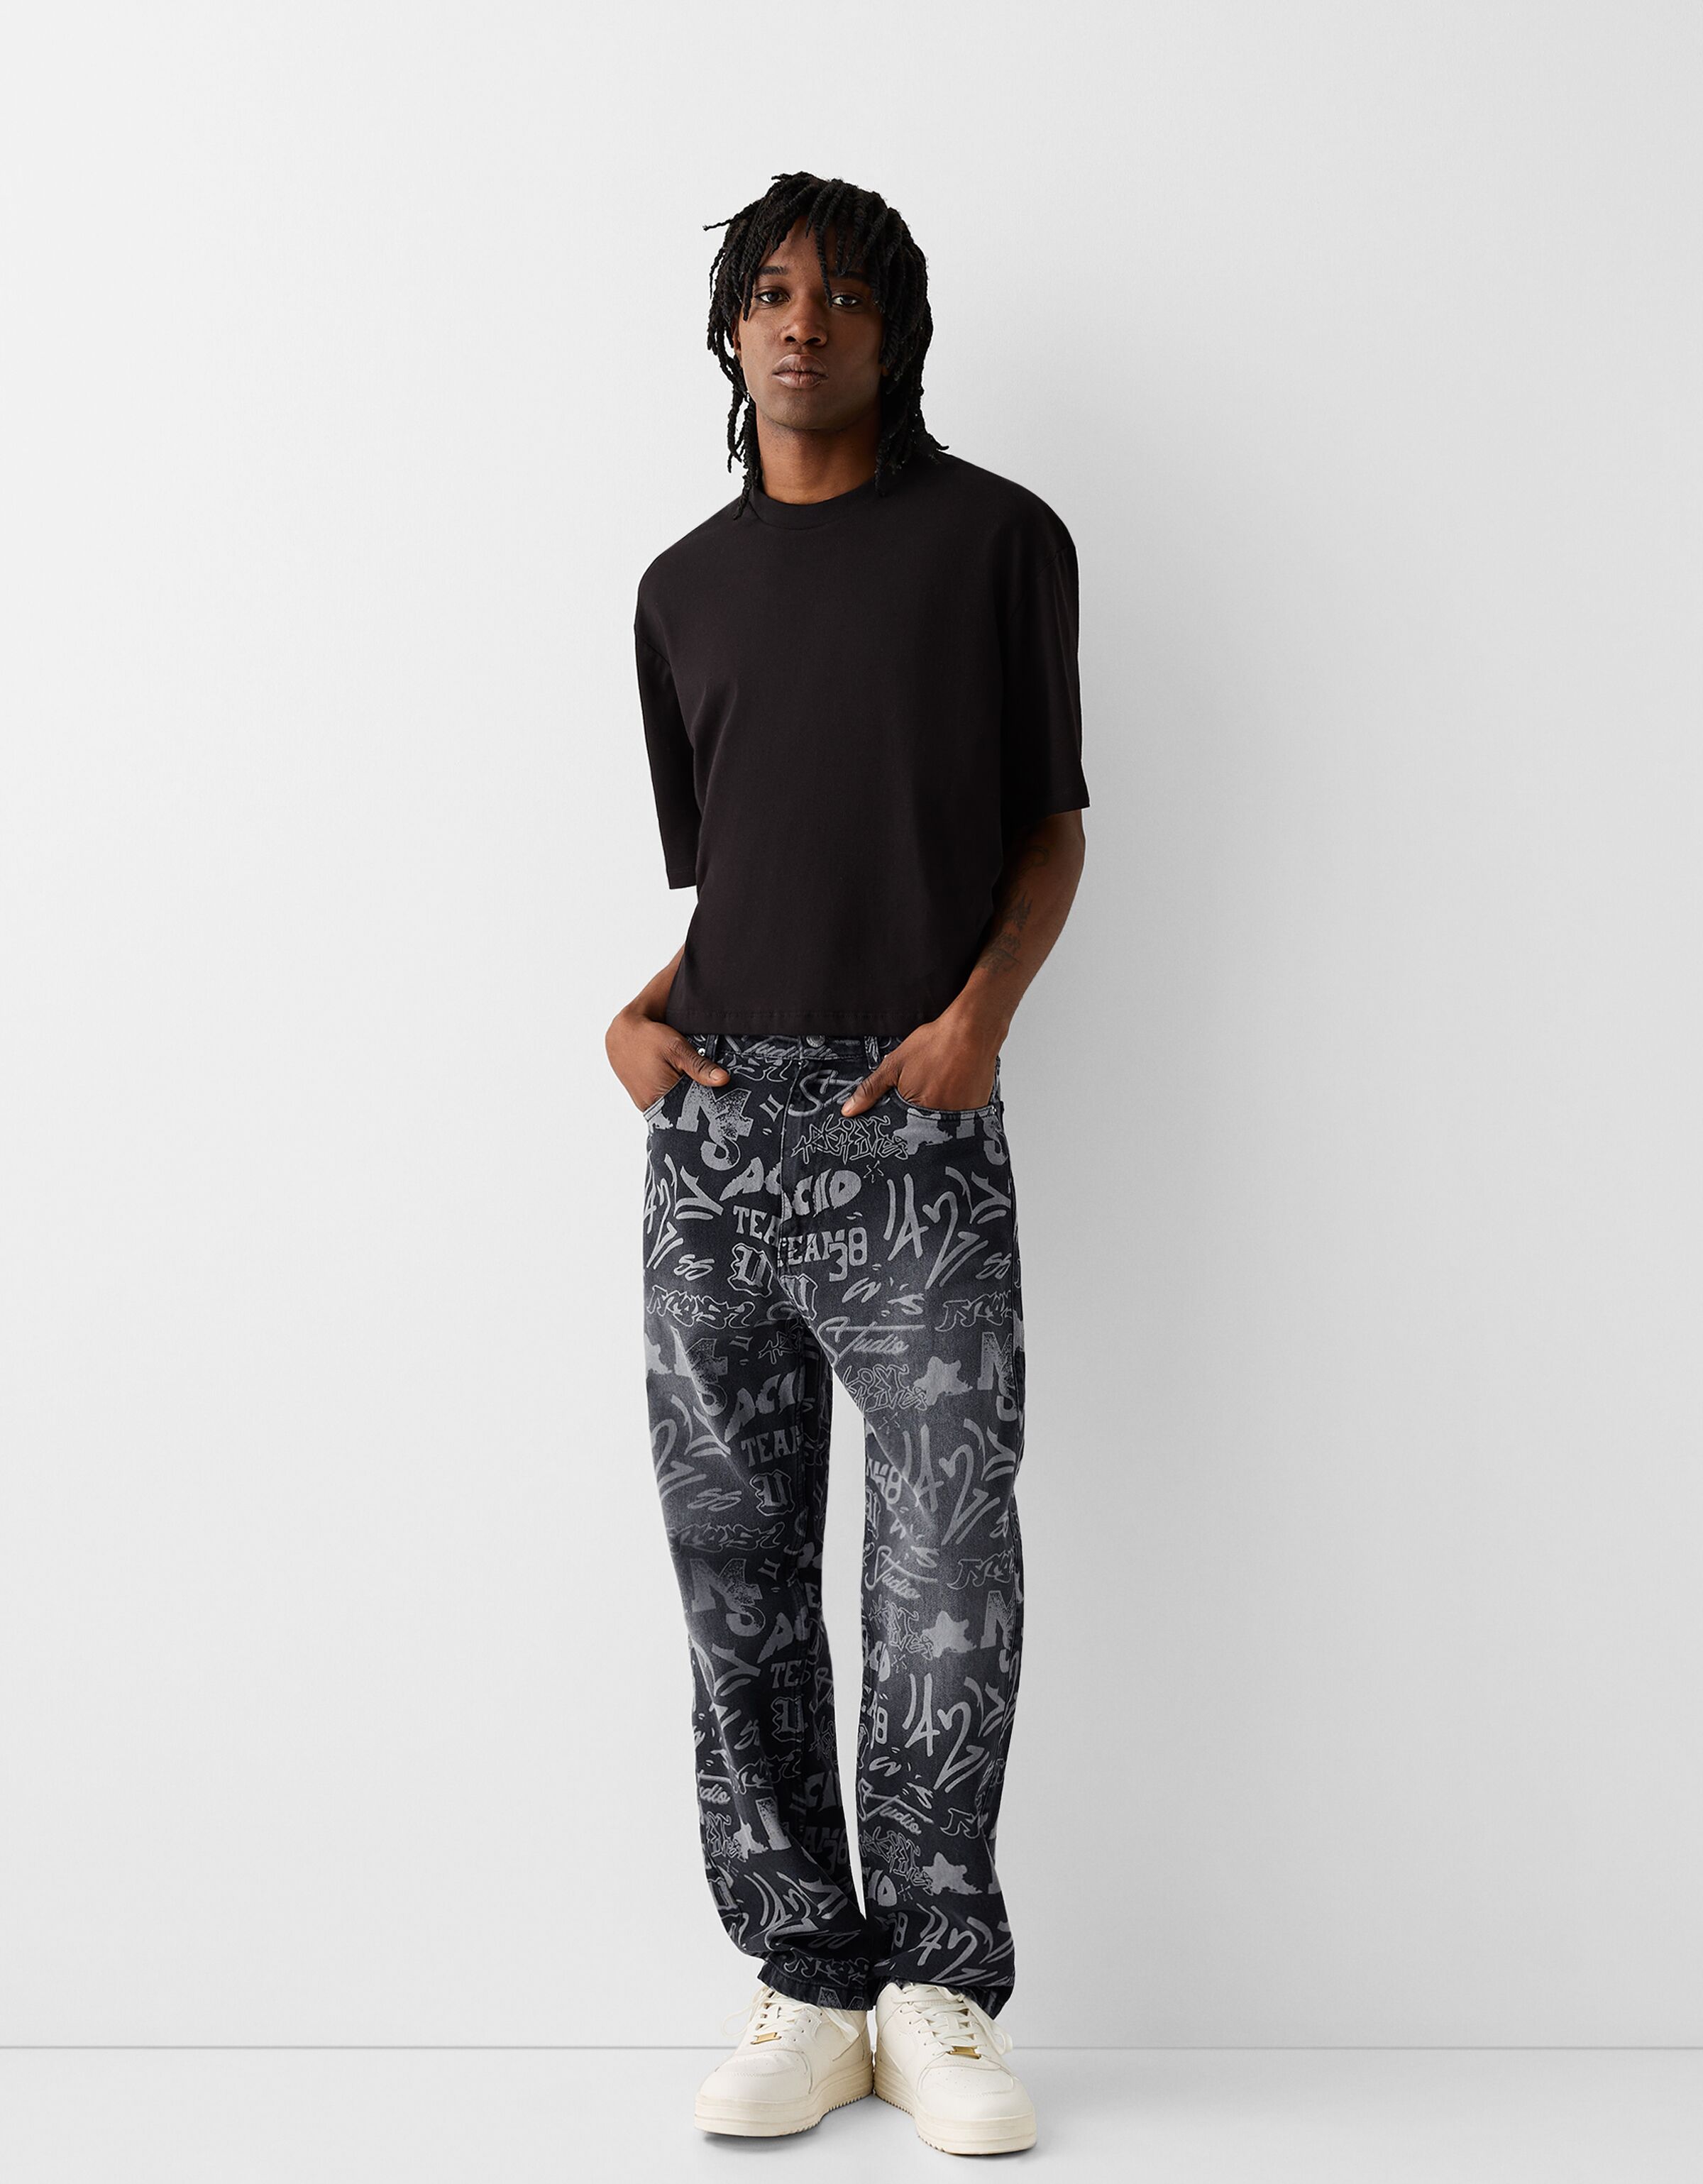 Enrica Men's Casual Color Printed Jeans Skinny Black Denim Pants  (Black&Air, 28) at Amazon Men's Clothing store